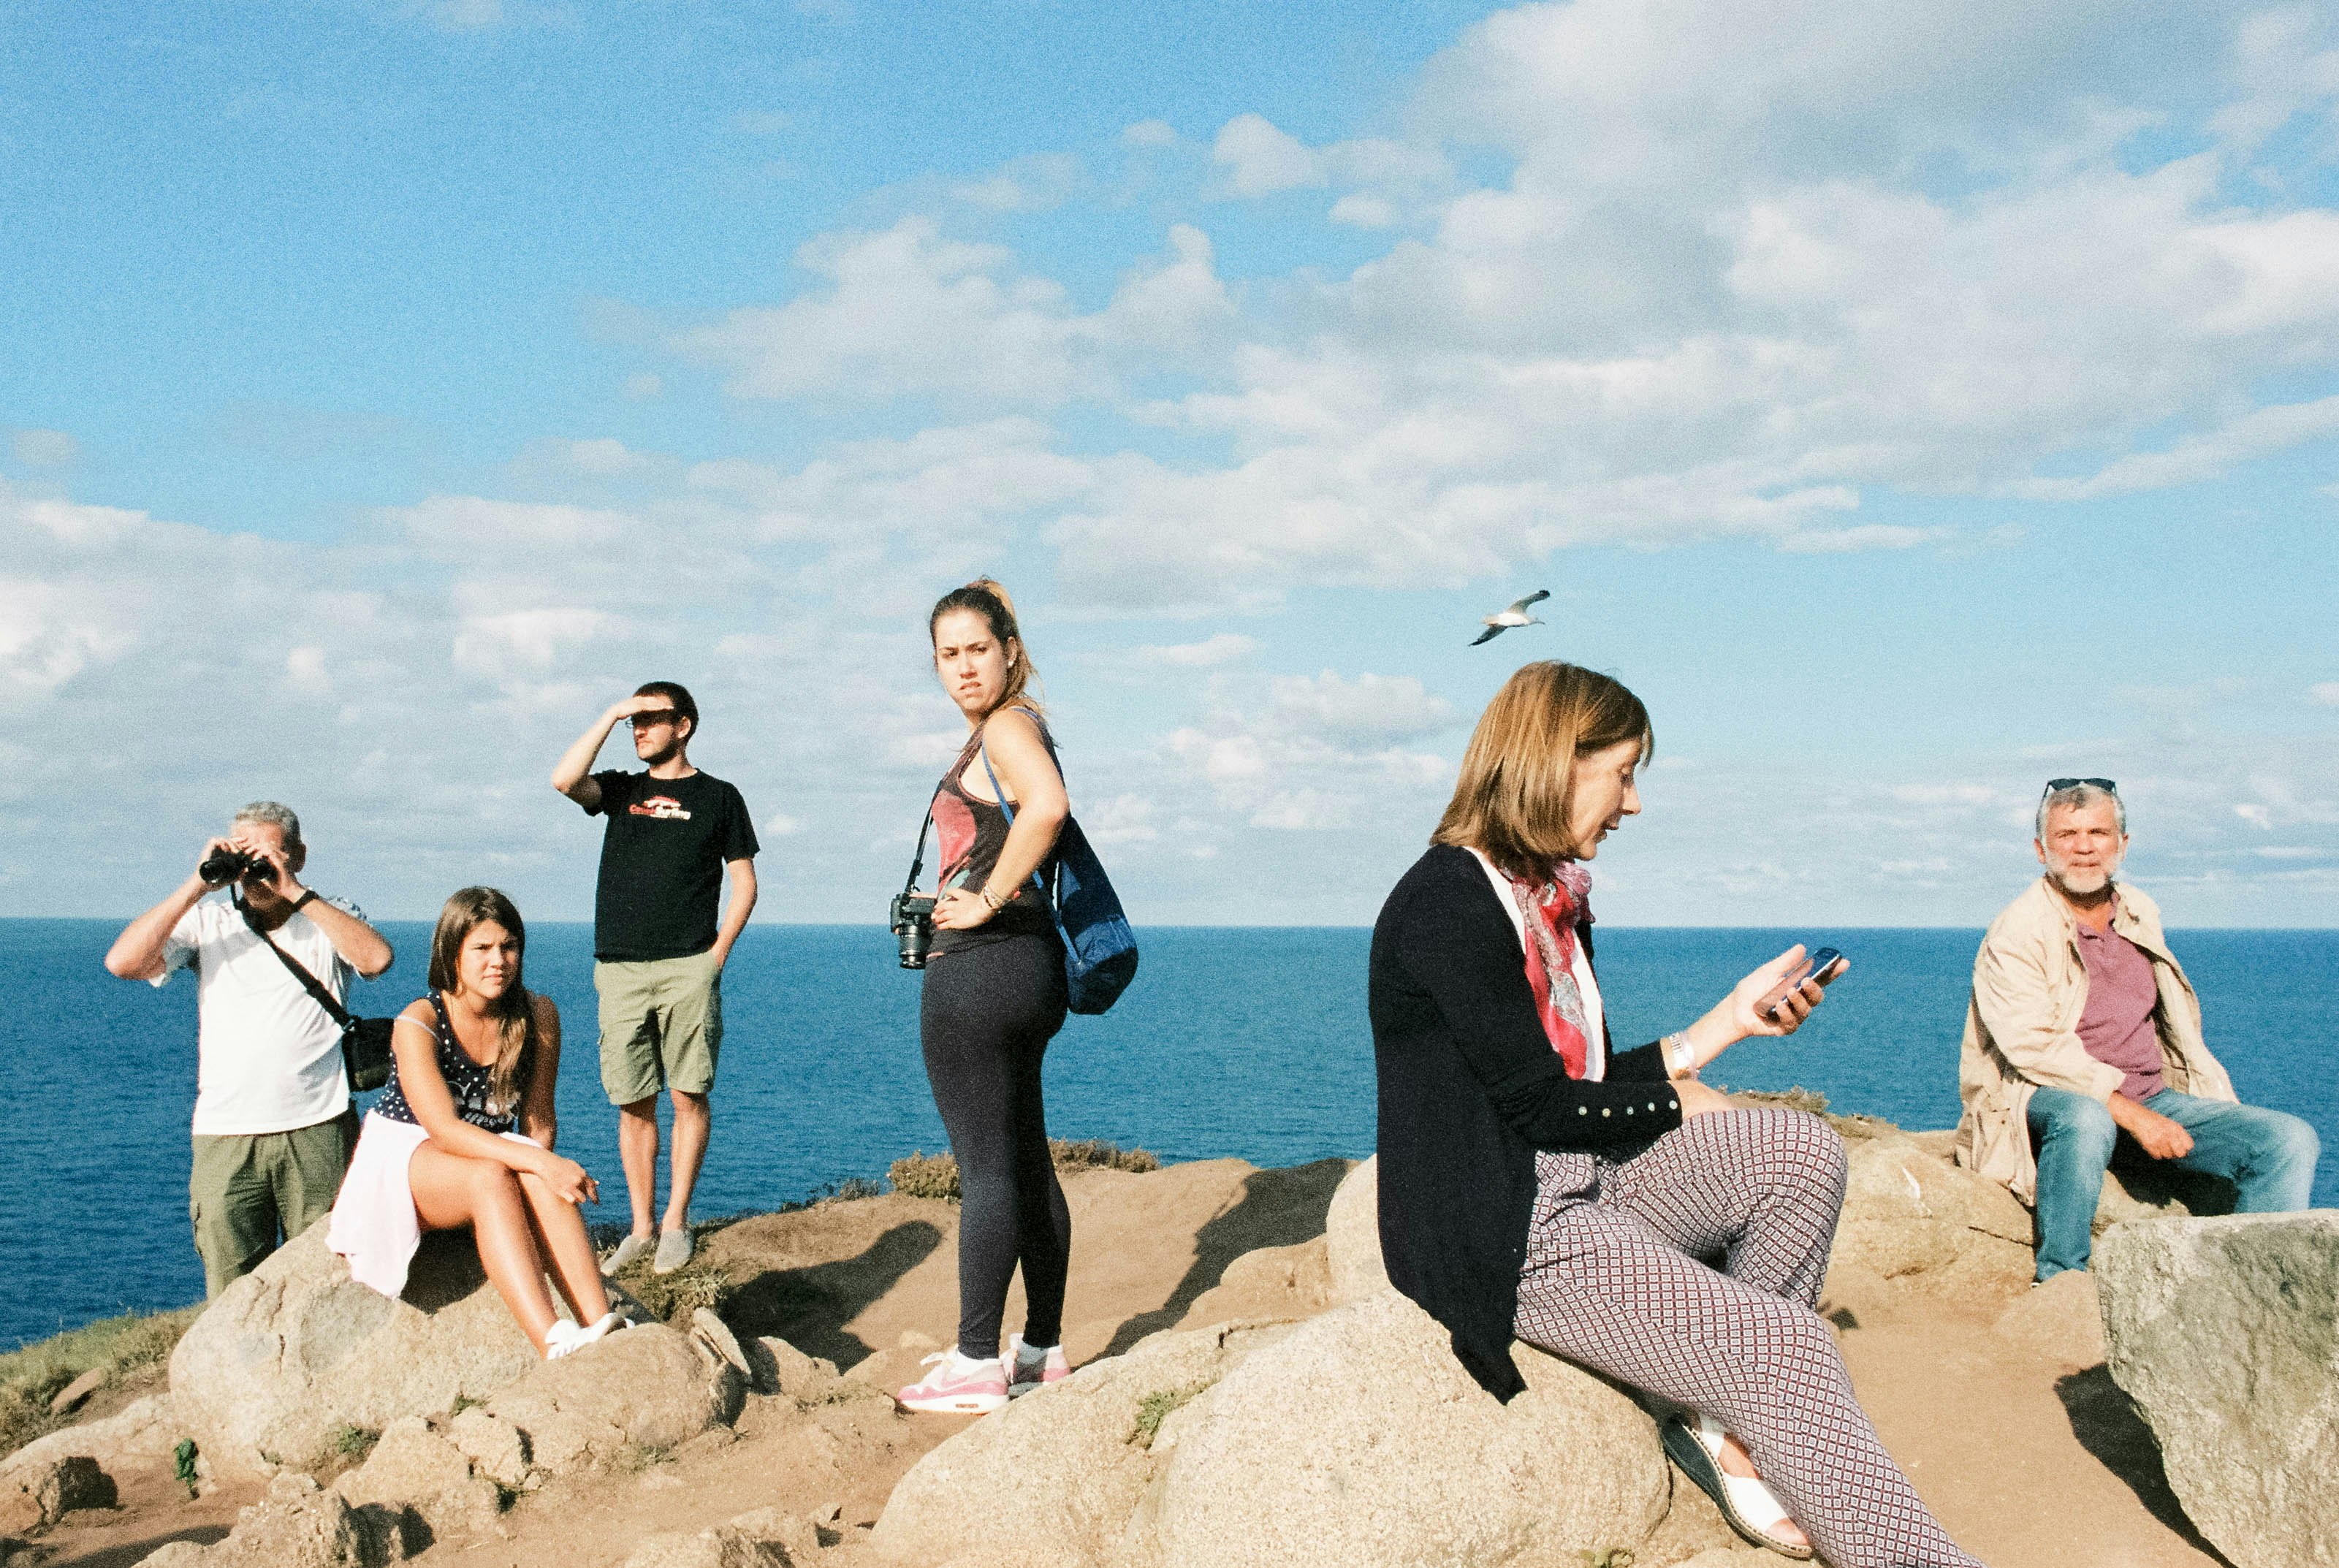 3 women sitting on rock near sea during daytime